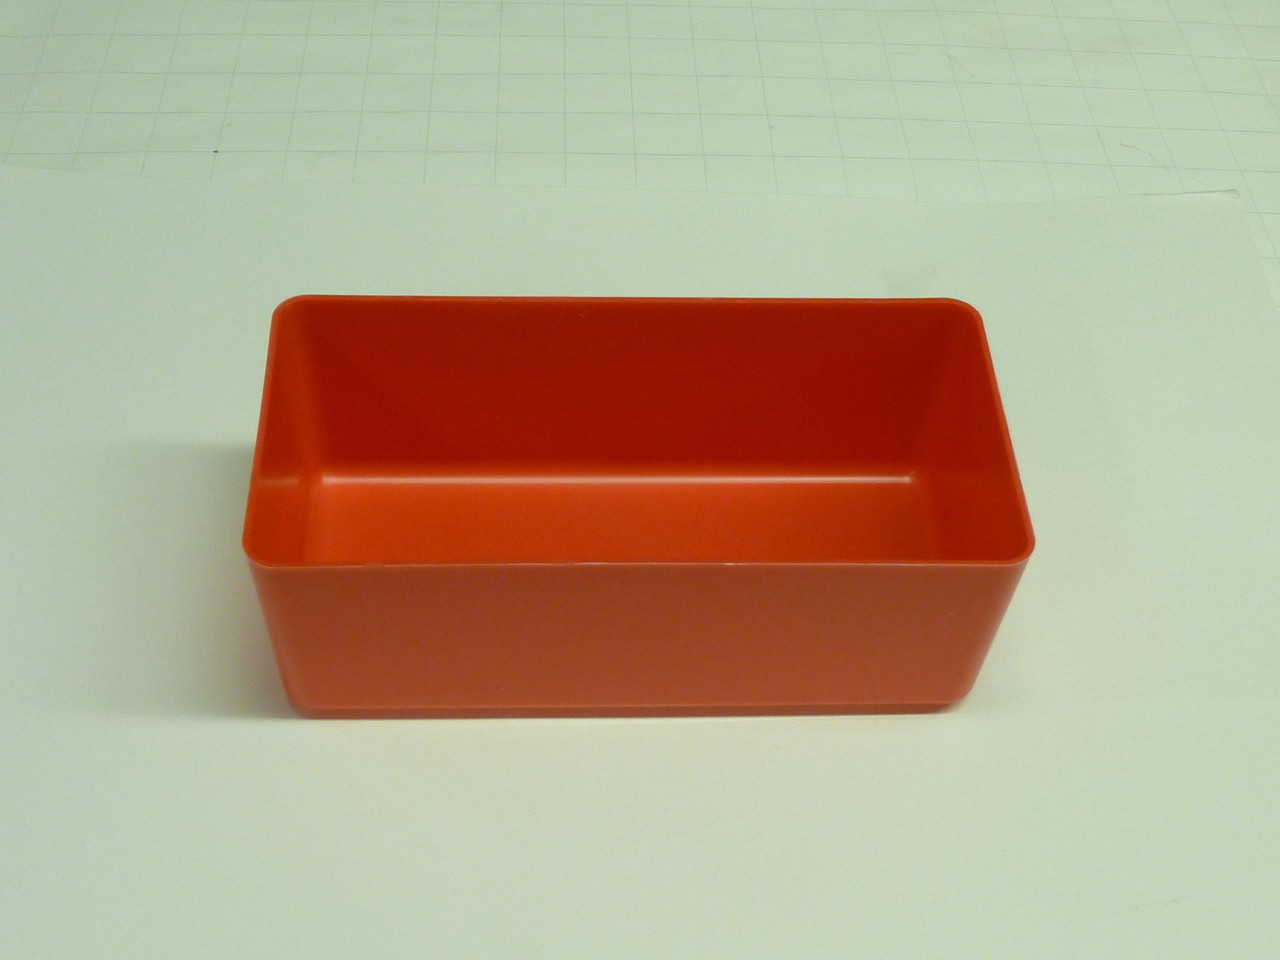 4" x 8" x 3" red plastic box